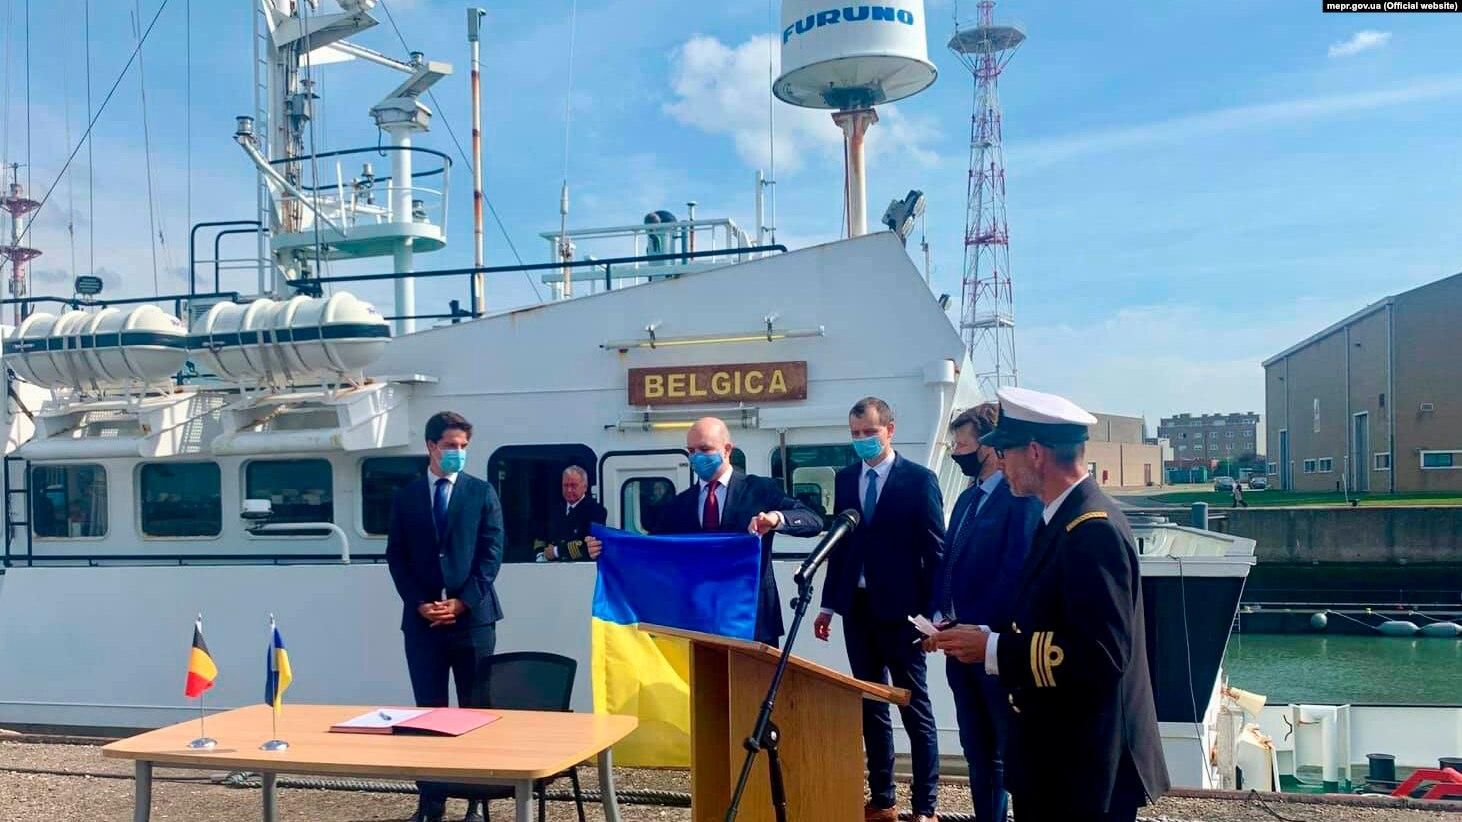 Бельгія передала Україні легендарне судно для патрулювання Чорного та Азовського морів - Україна новини - 24 Канал